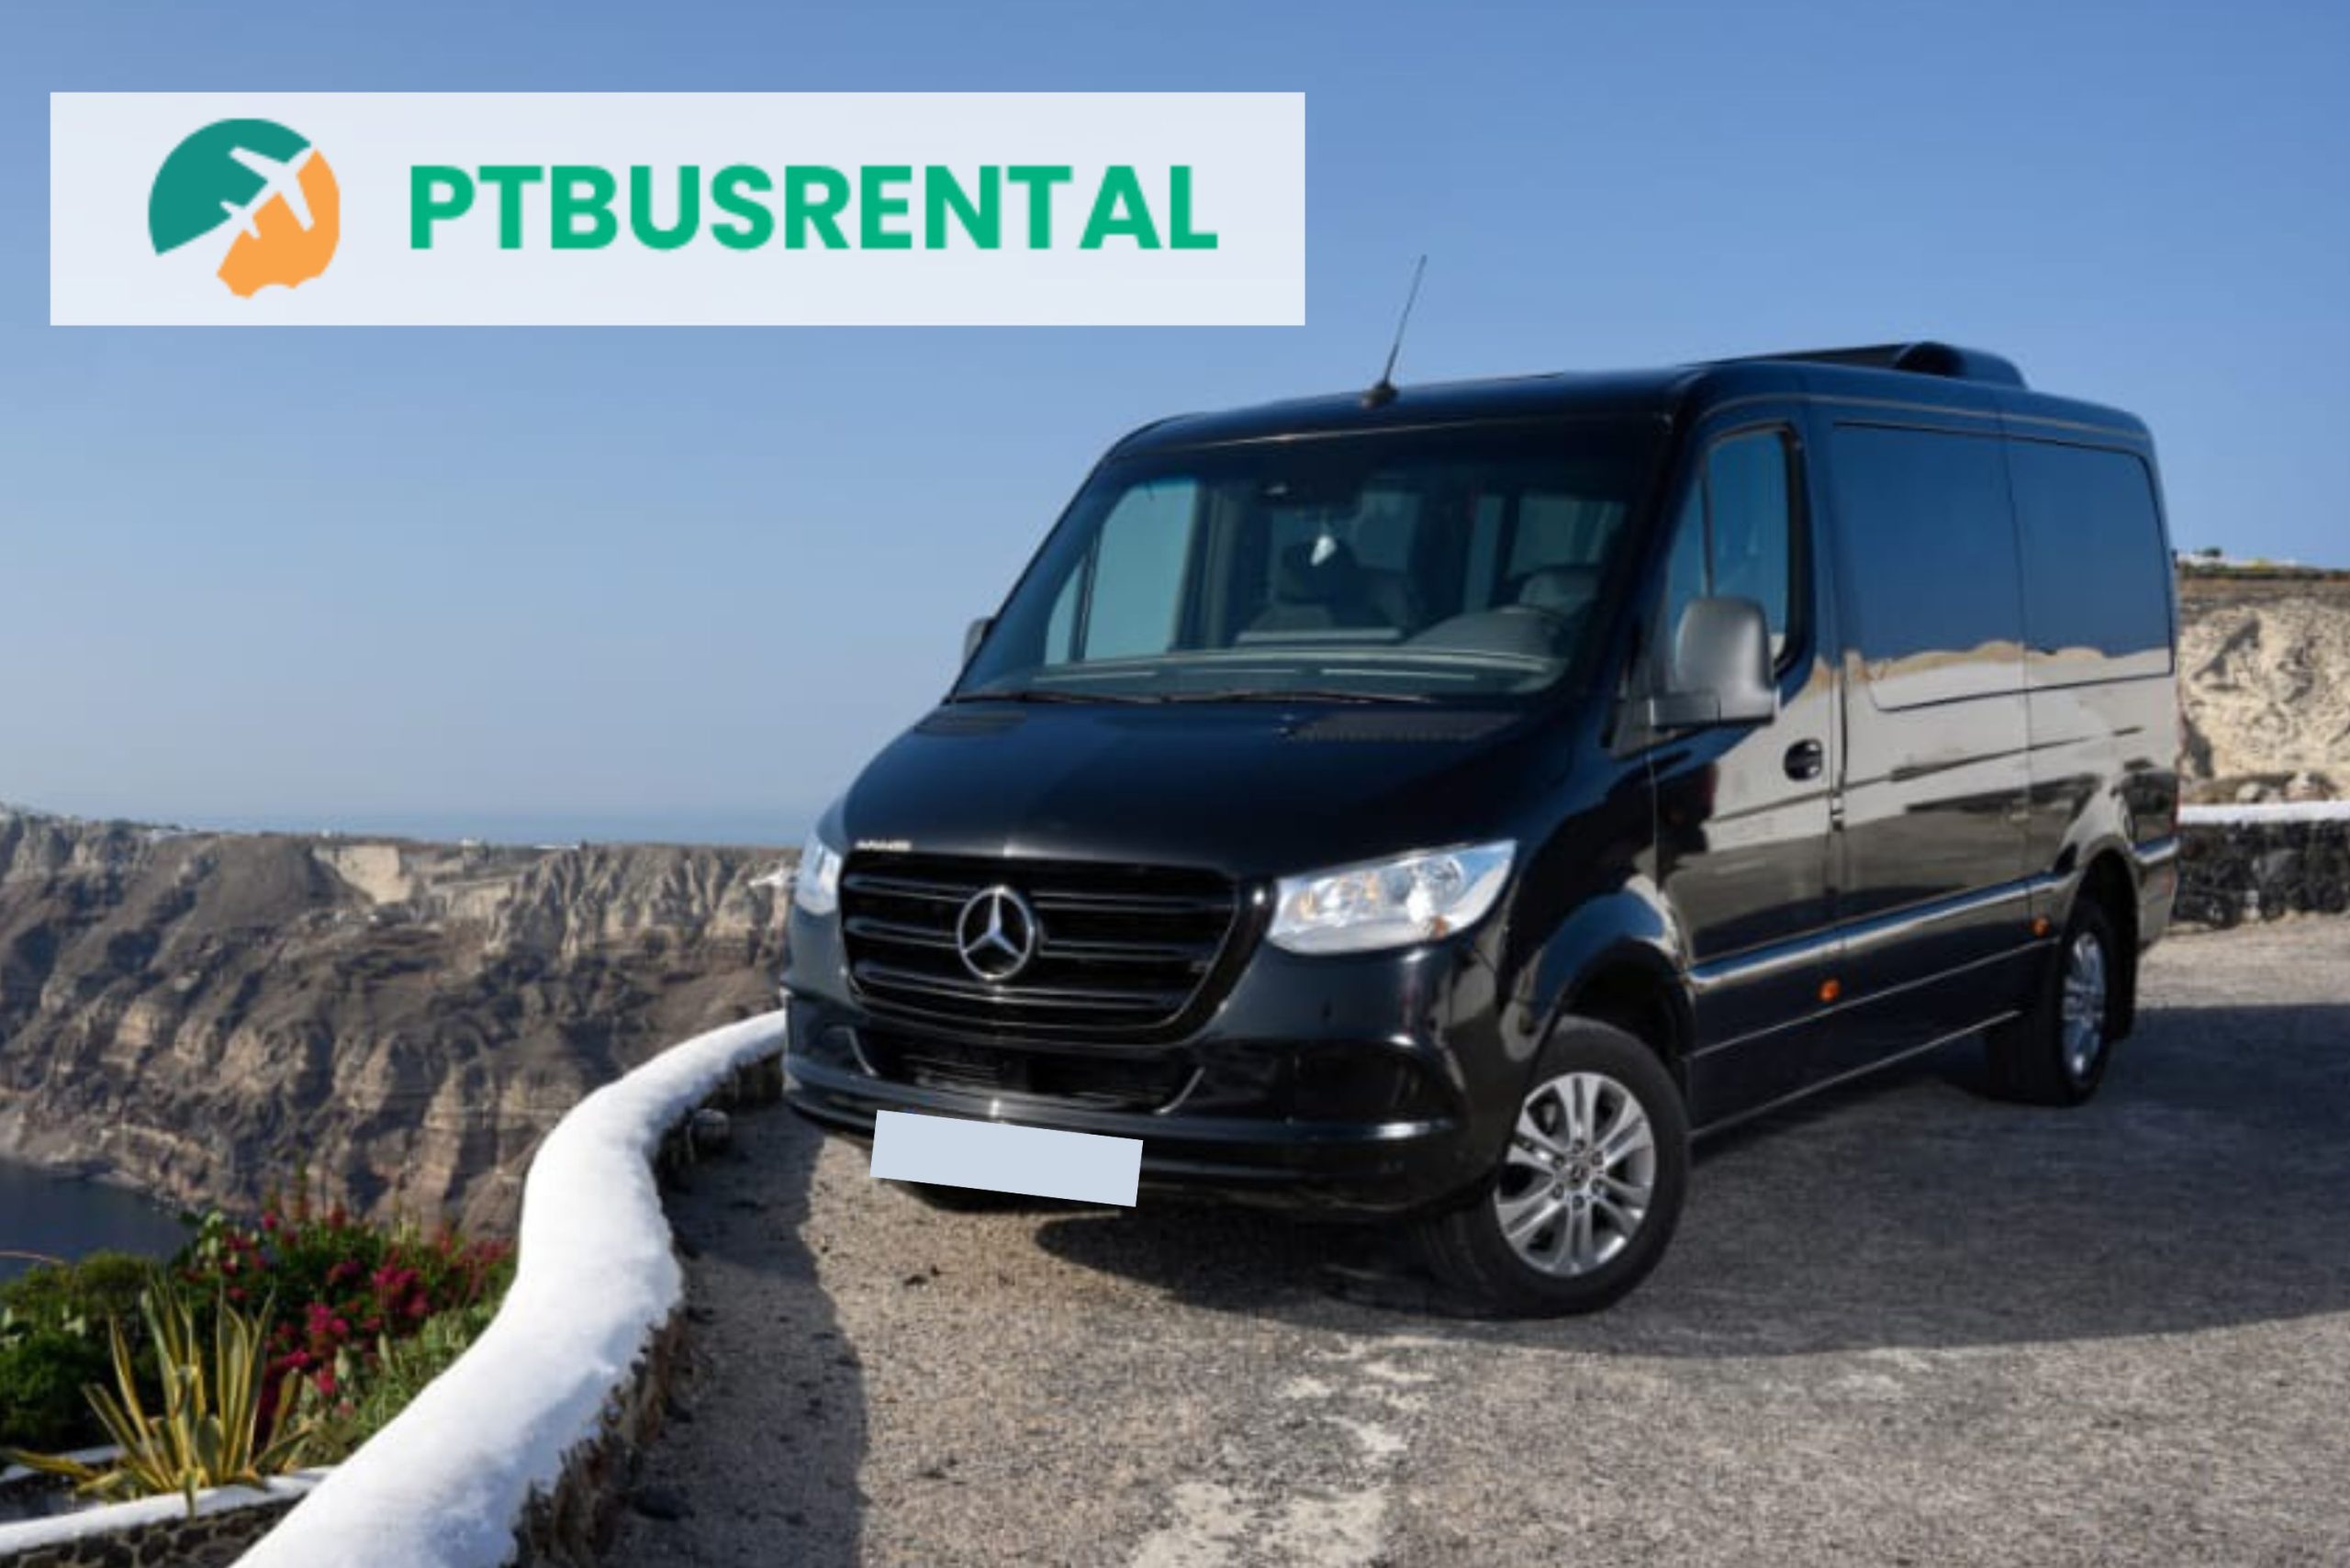 Coach rental in Germany - PTBusrental